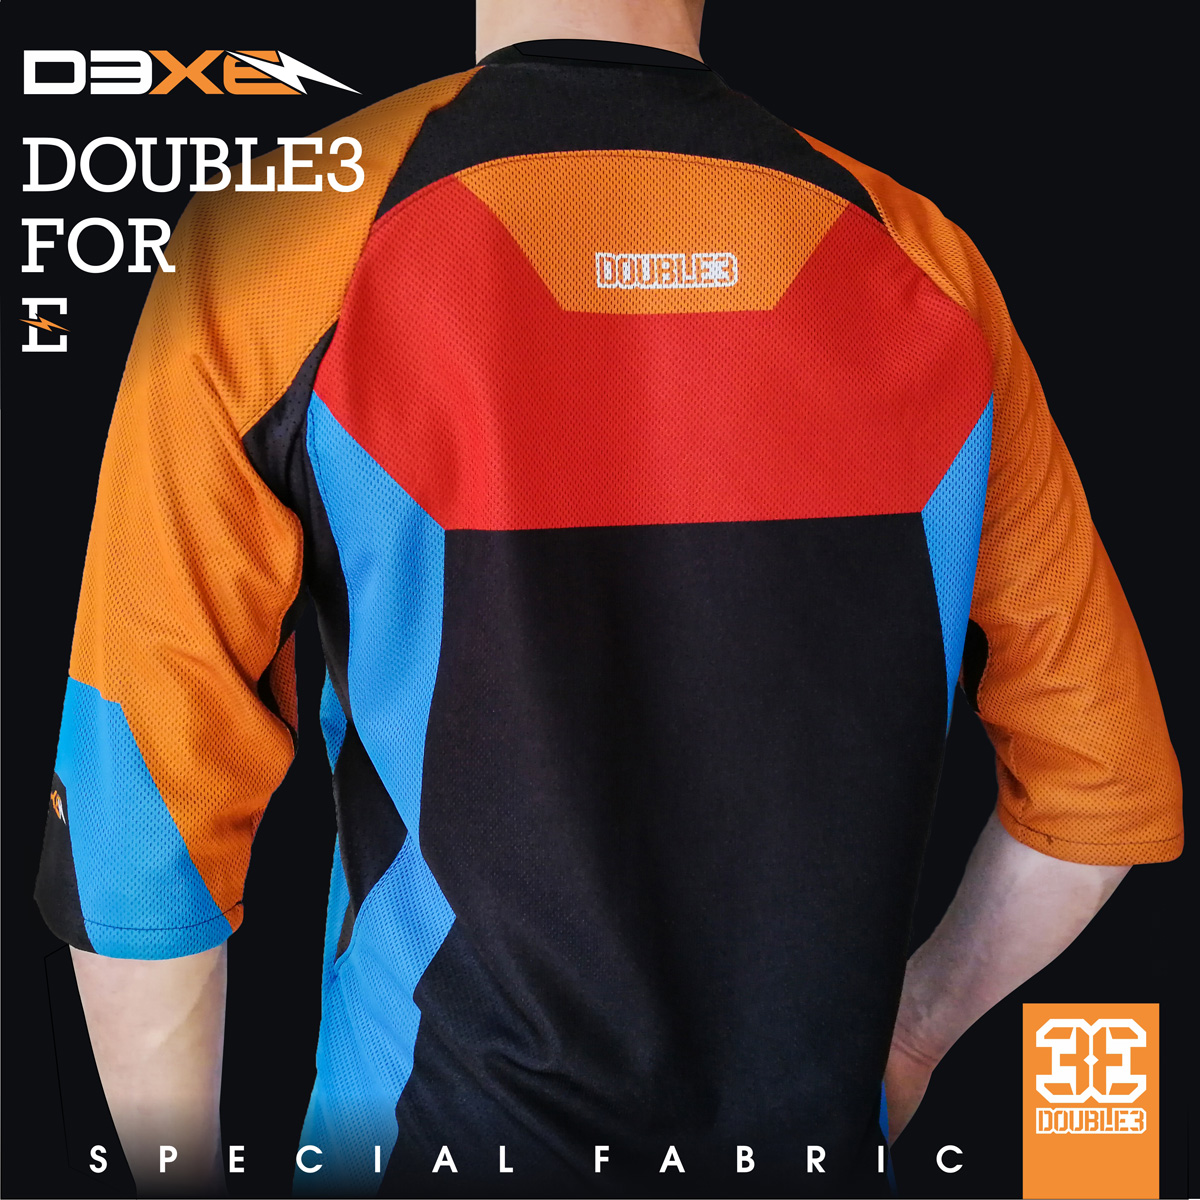 Immagine promozionale per abbigliamento D3xE di Double3